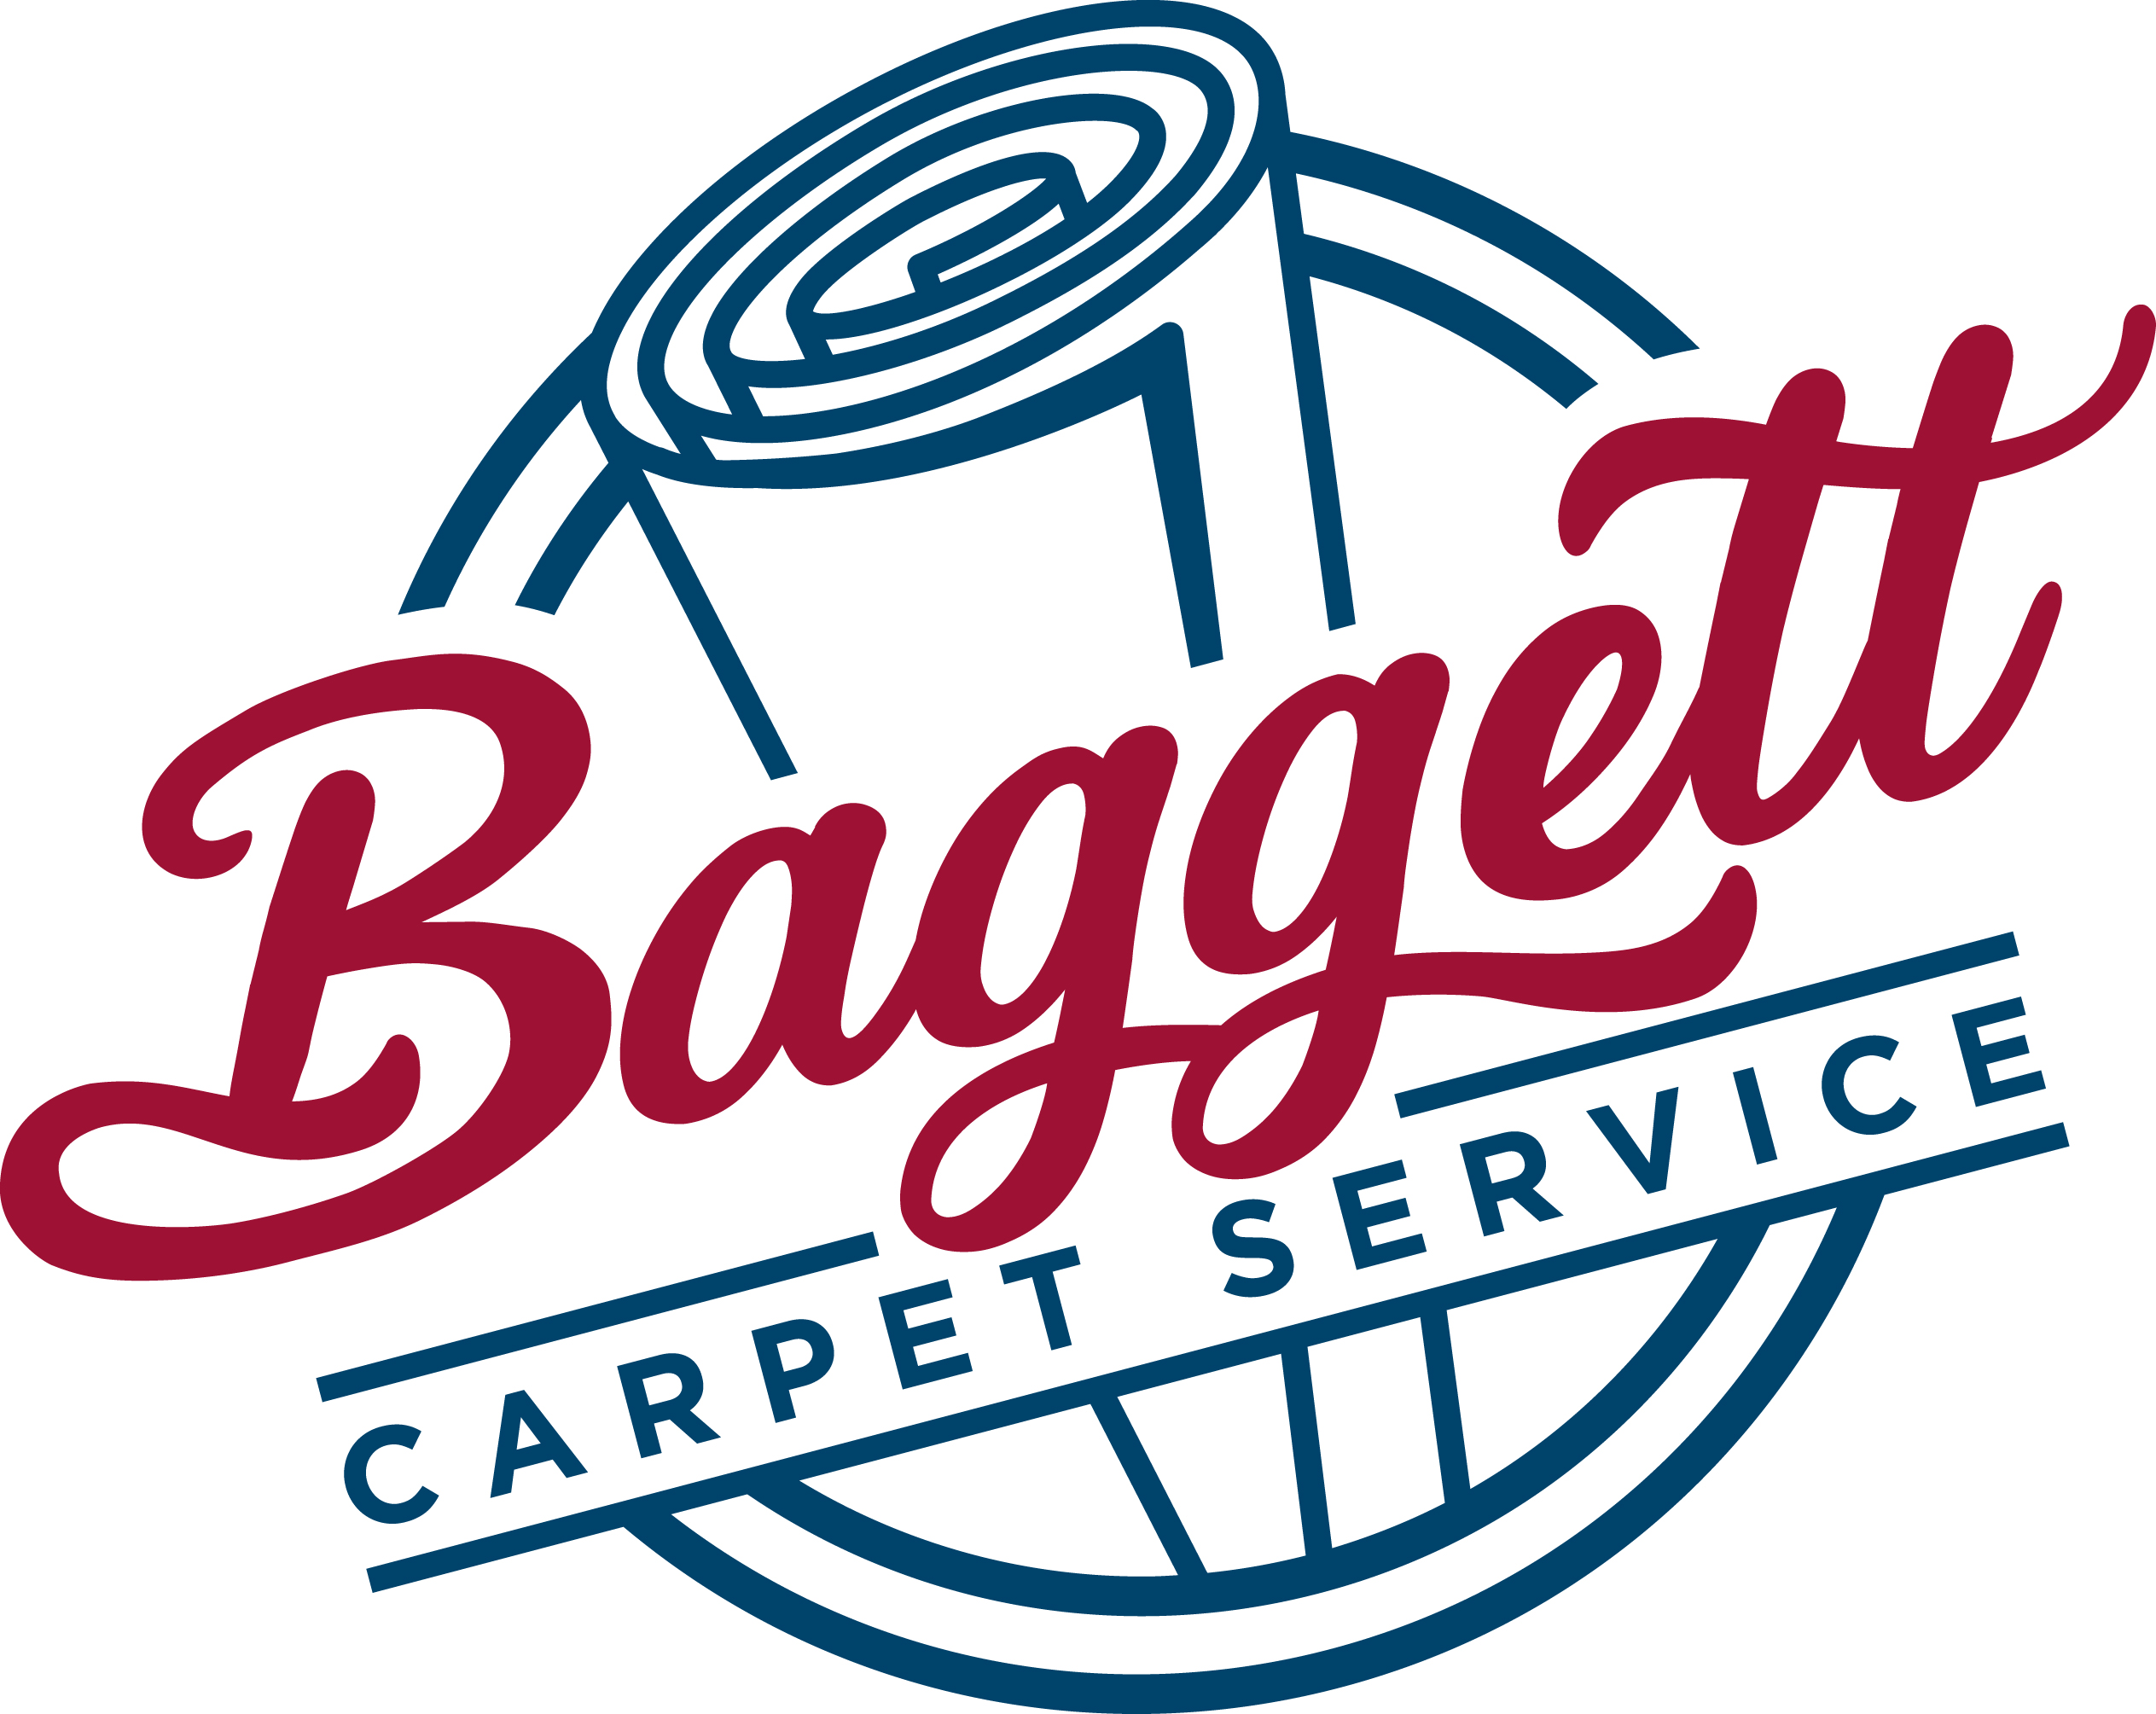 Baggett Carpet Service | Residential